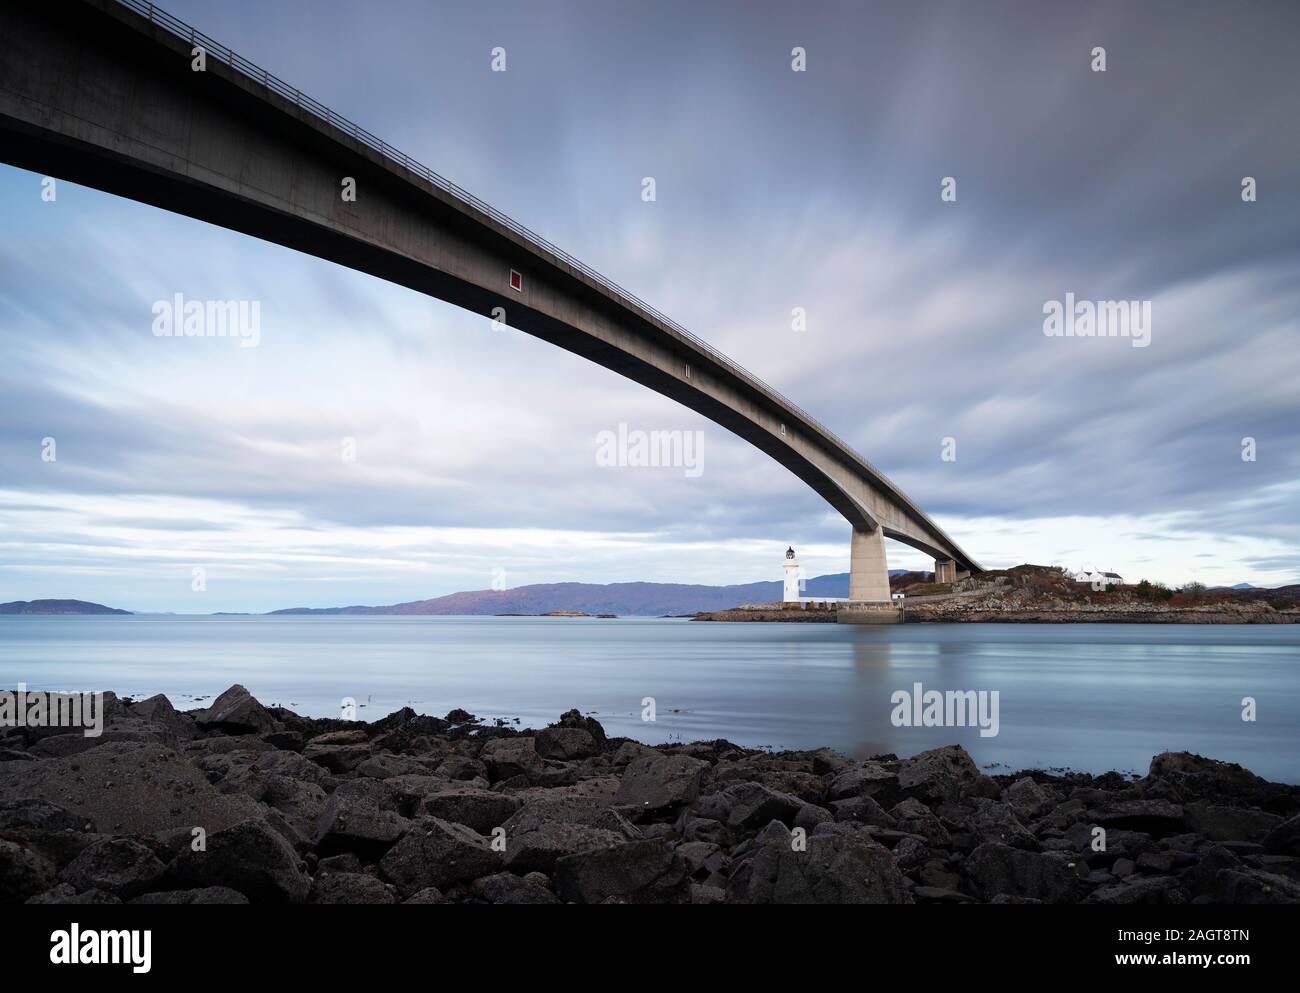 Photo Par © Jamie Callister. Pont de l'île de Skye, construit en 1995, Eilean Ban, île de Skye, Écosse du Nord-Ouest, Royaume-Uni, 25 novembre 2019. Banque D'Images